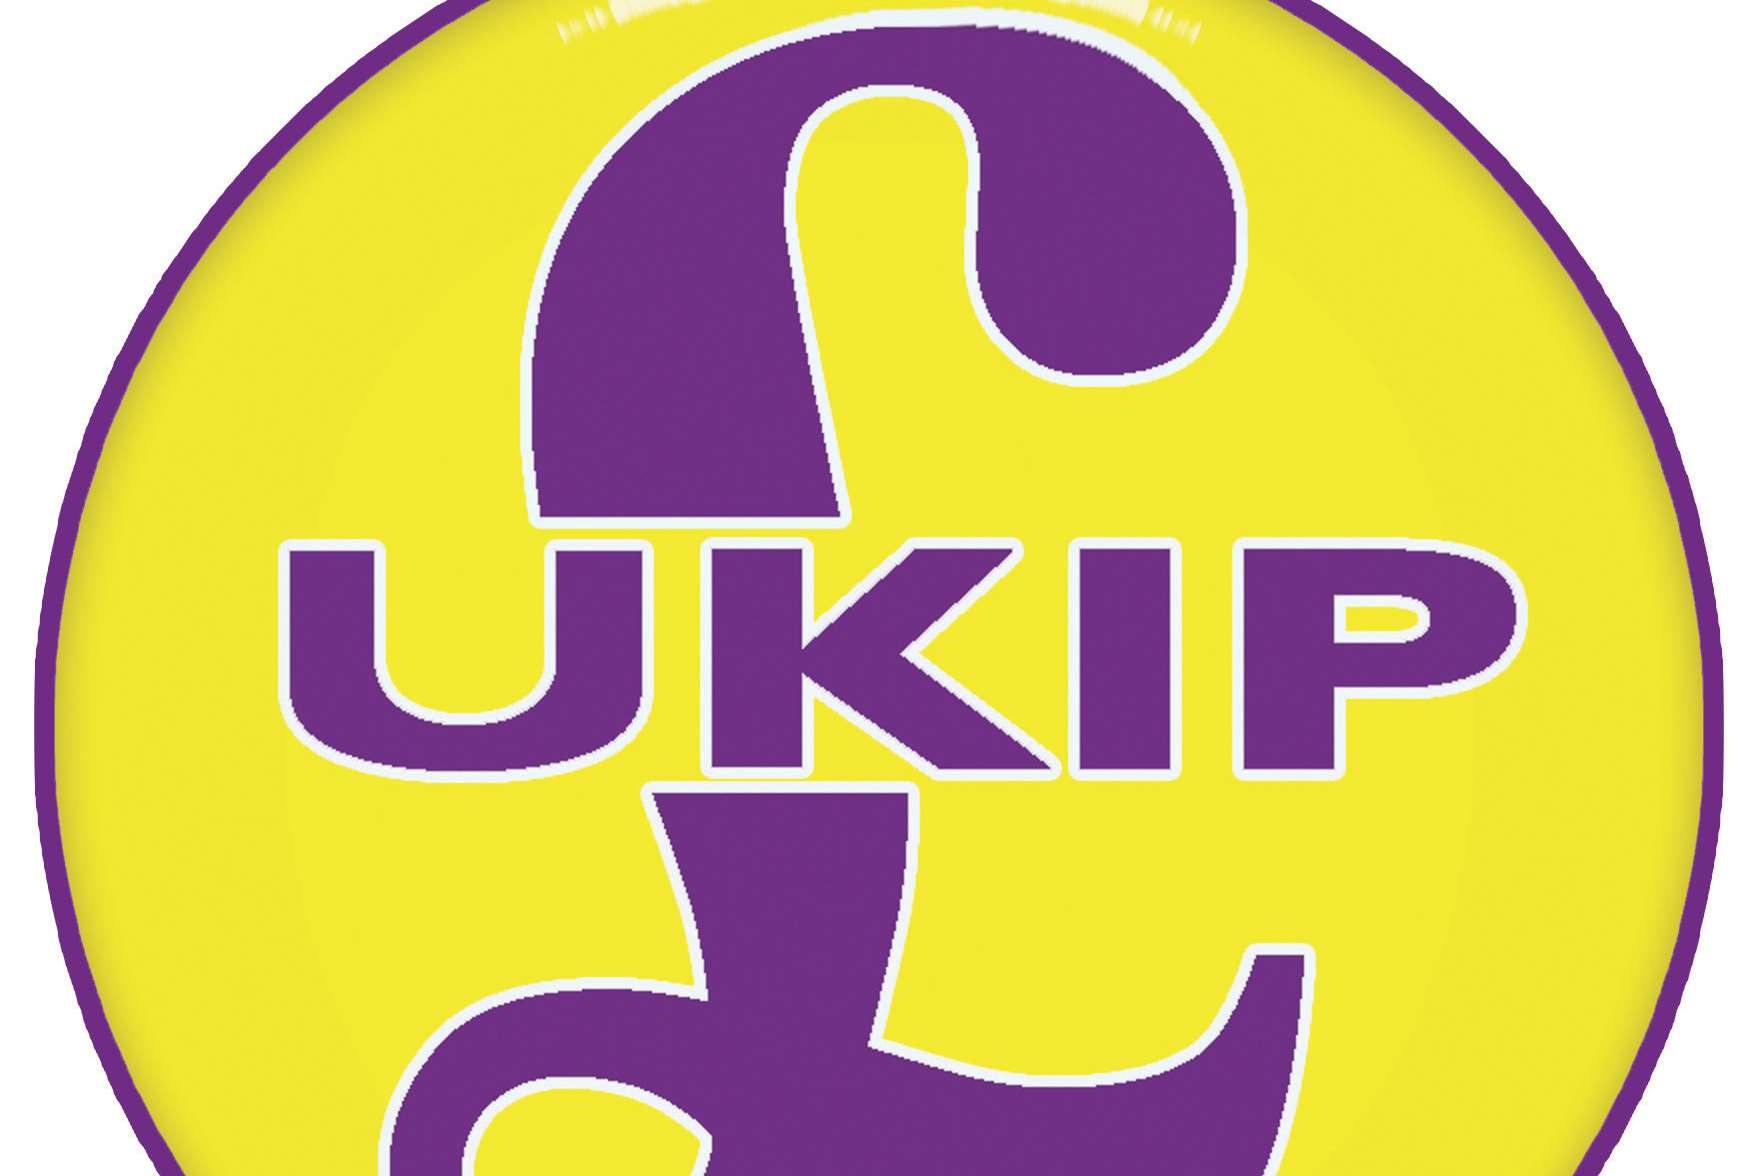 UKIP logo